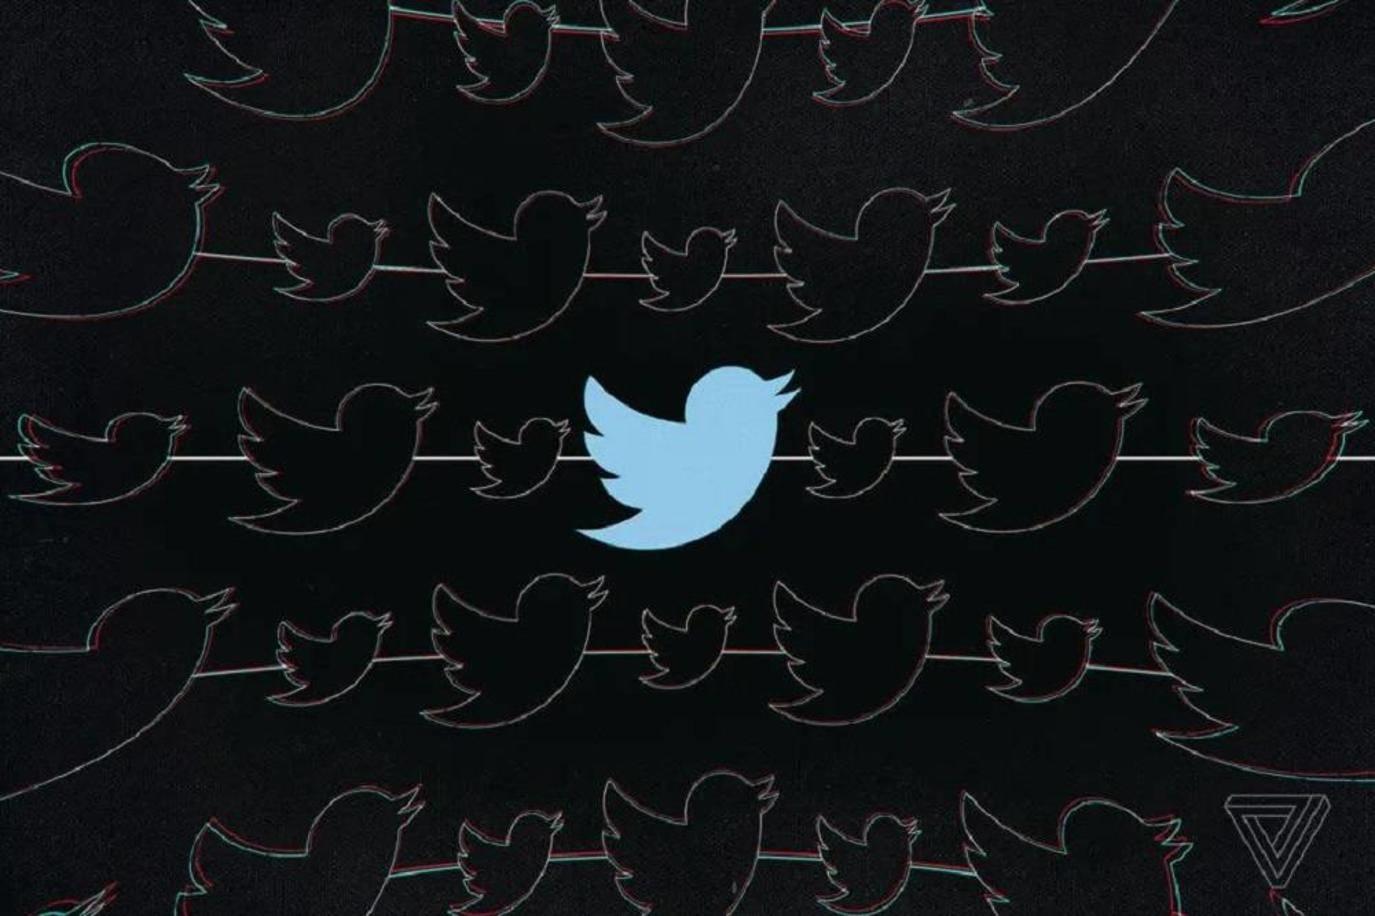  تويتر يمنح مستخدمي آيفون ميزة جديدة.. قص تسجيلات Spaces 83199